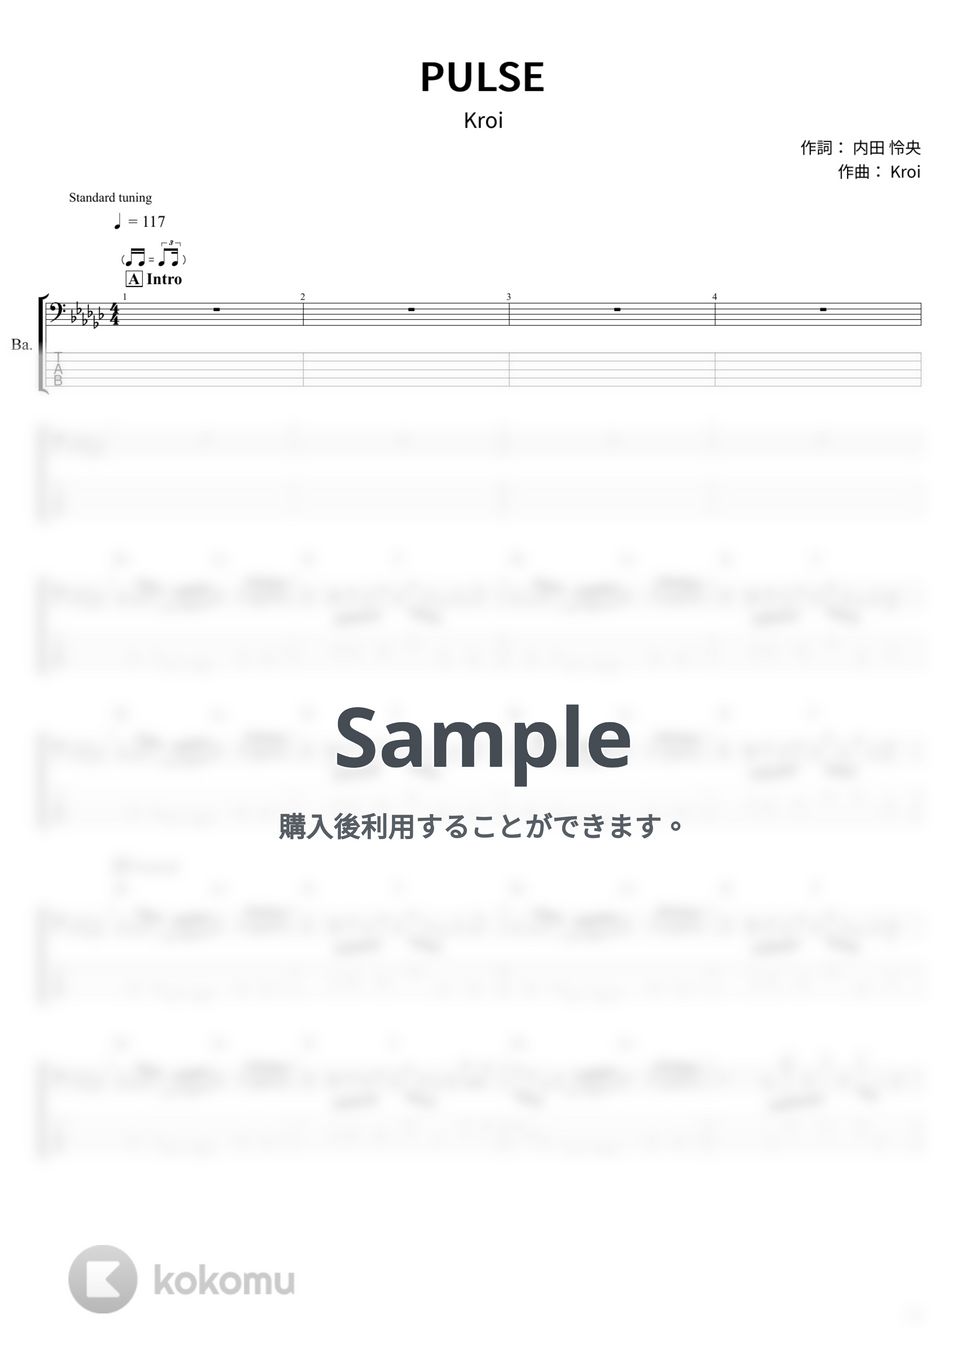 Kroi - PULSE (ベース Tab譜 5弦) by T's bass score